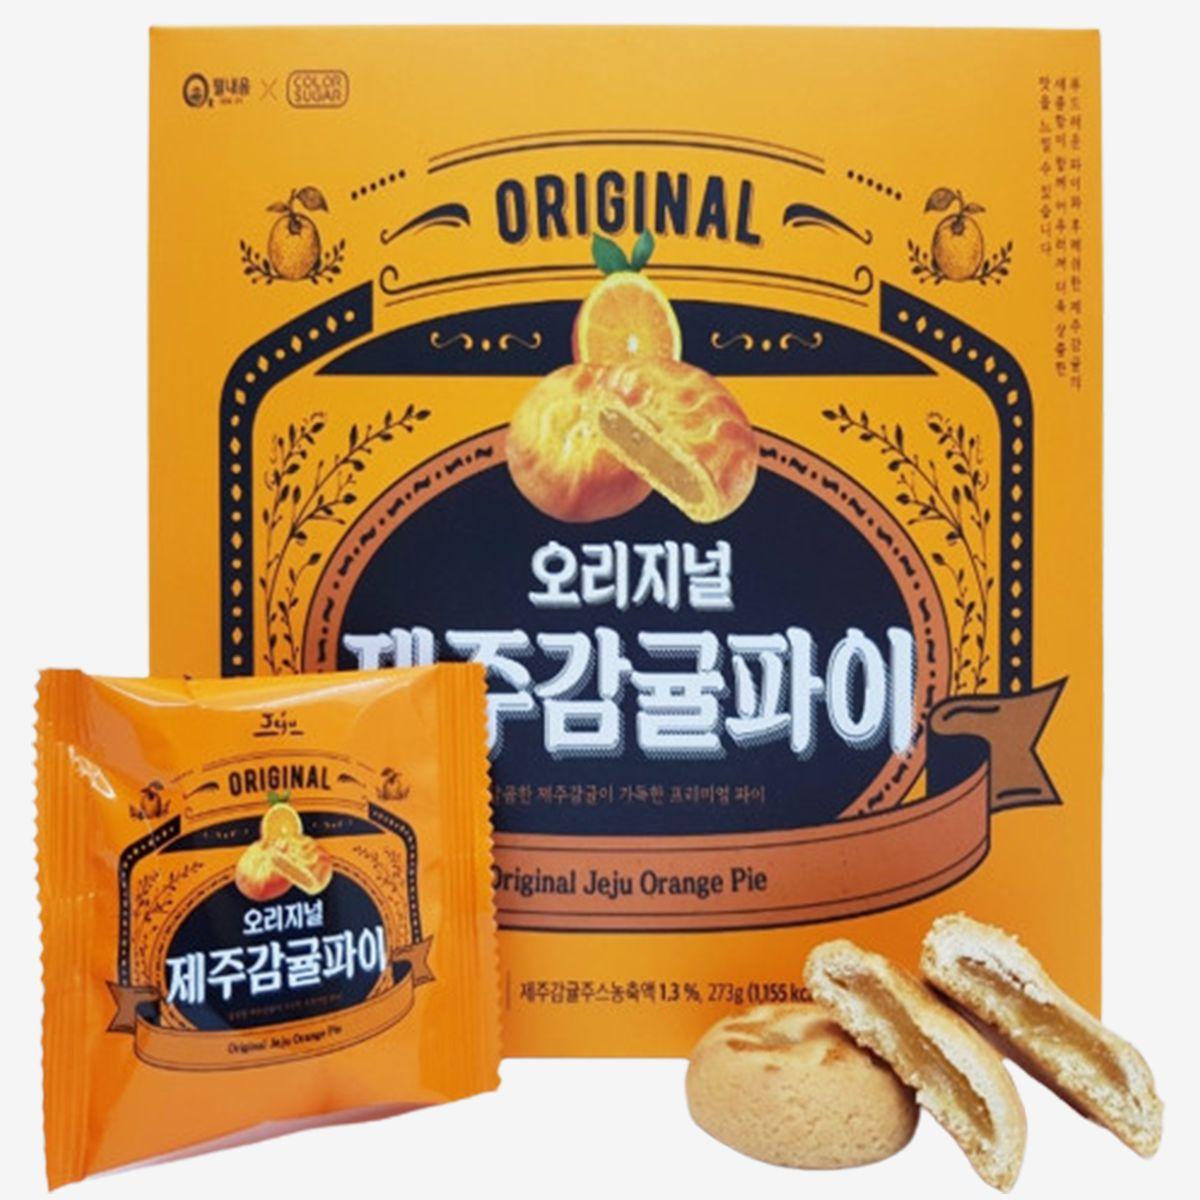 Original Jeju Tangerine Pie (14 Pieces)